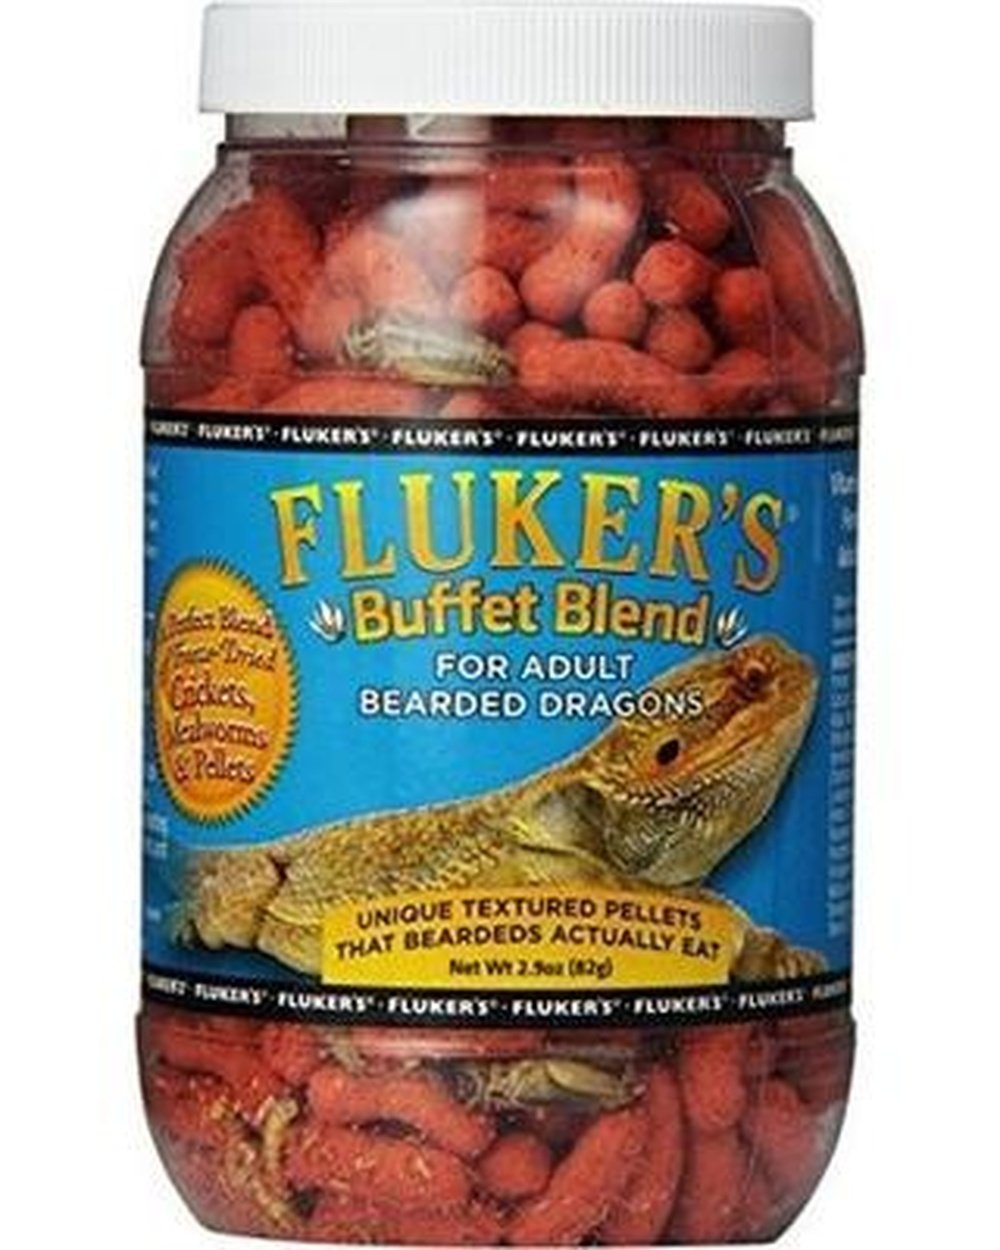 Fluker's Buffet Blend for Adult Bearded Dragons, 7.5oz